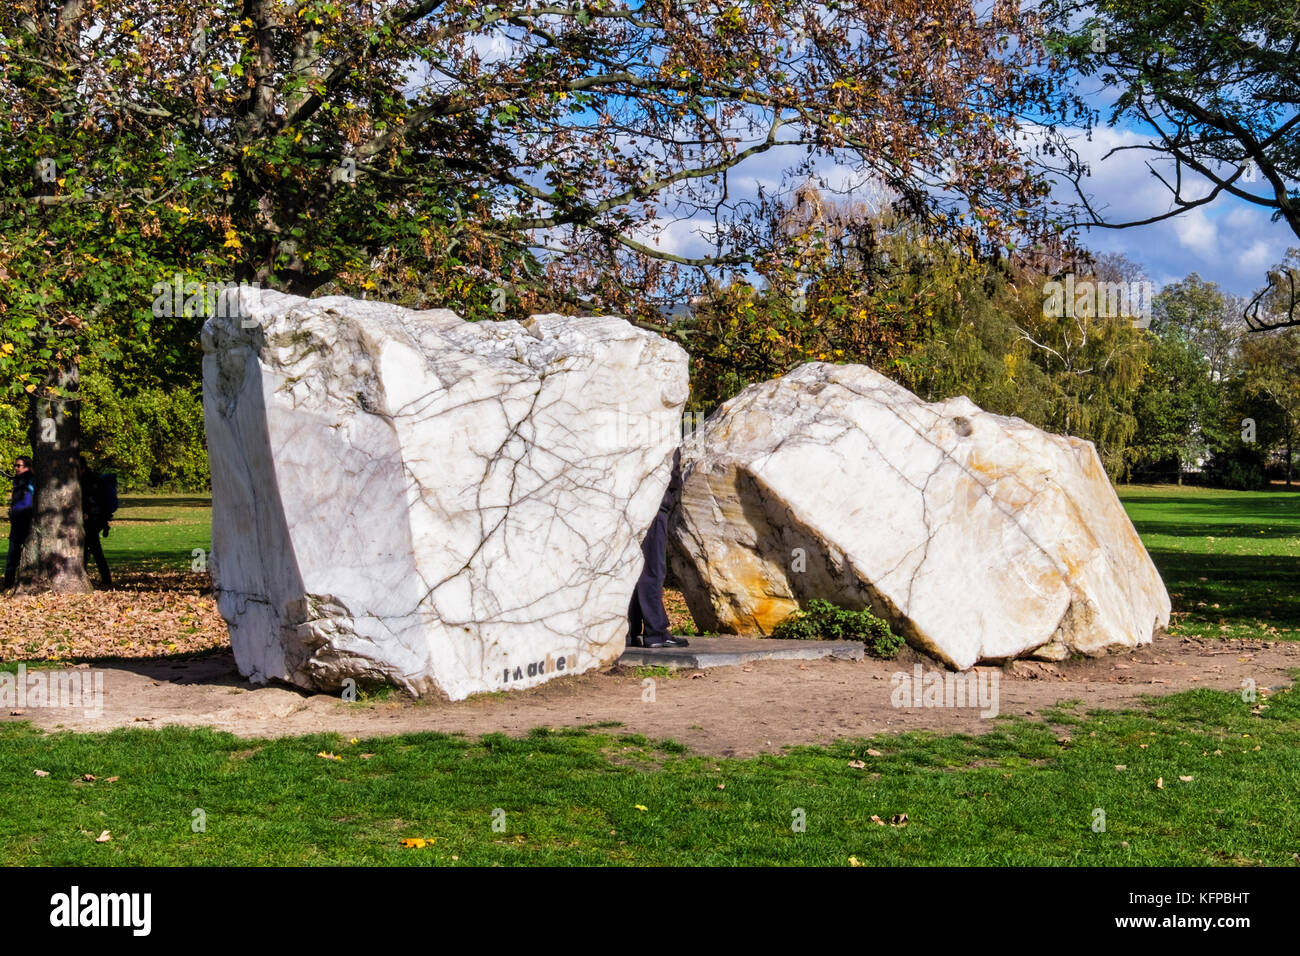 Berlino,MitteTiergarten park.Global stone Project.5 gruppi di pietre rappresentano i continenti.Il 21 giugno le pietre sono collegati dal riflesso dei raggi solari Foto Stock